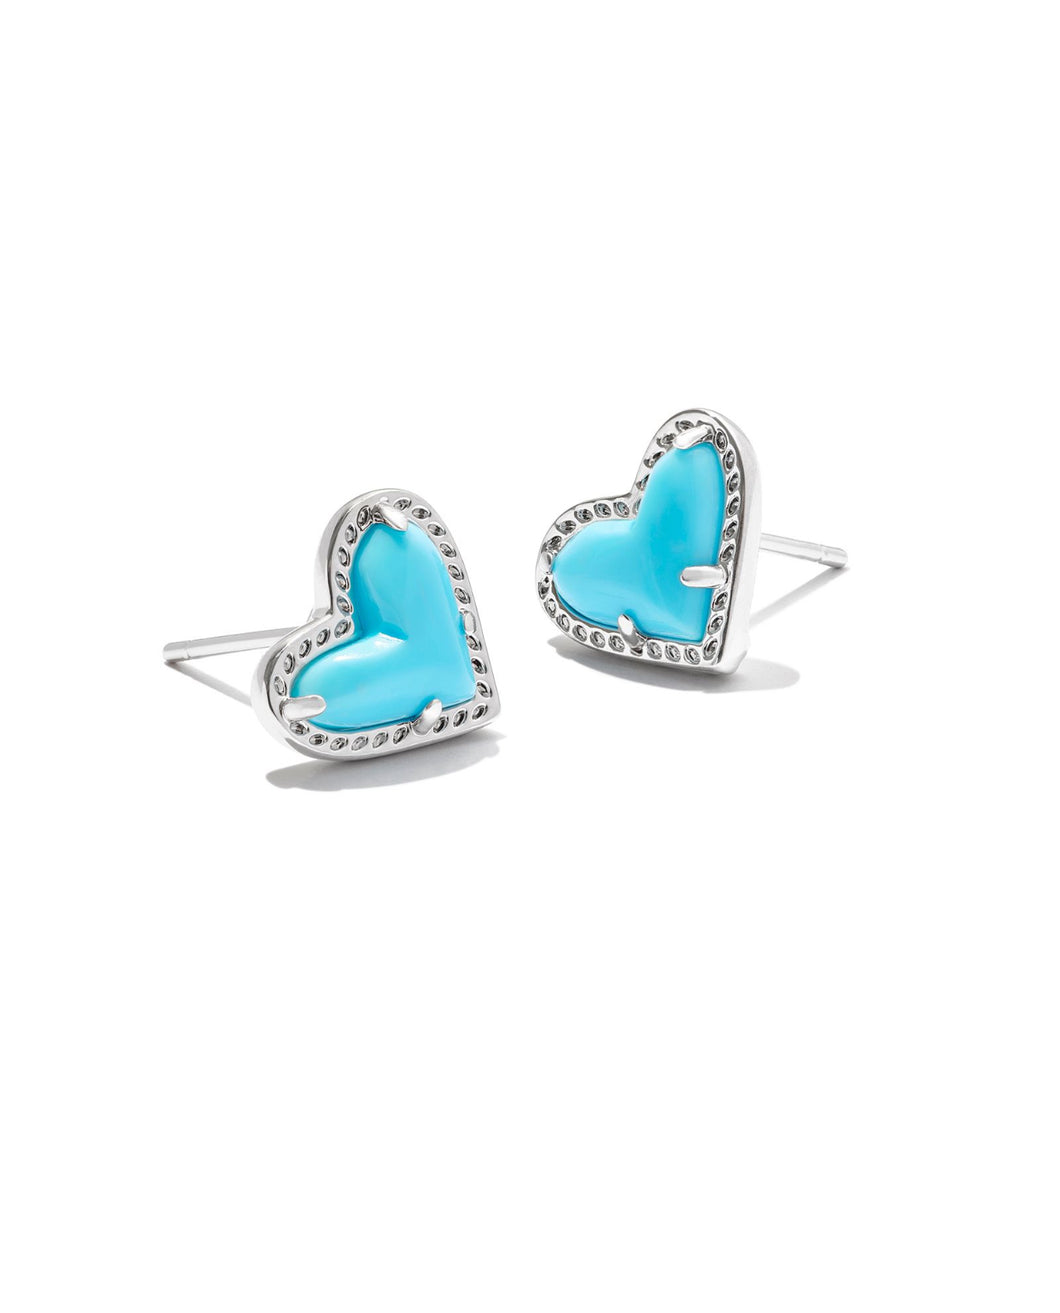 Kendra Scott: Ari Heart Stud Earrings in Silver Turquoise